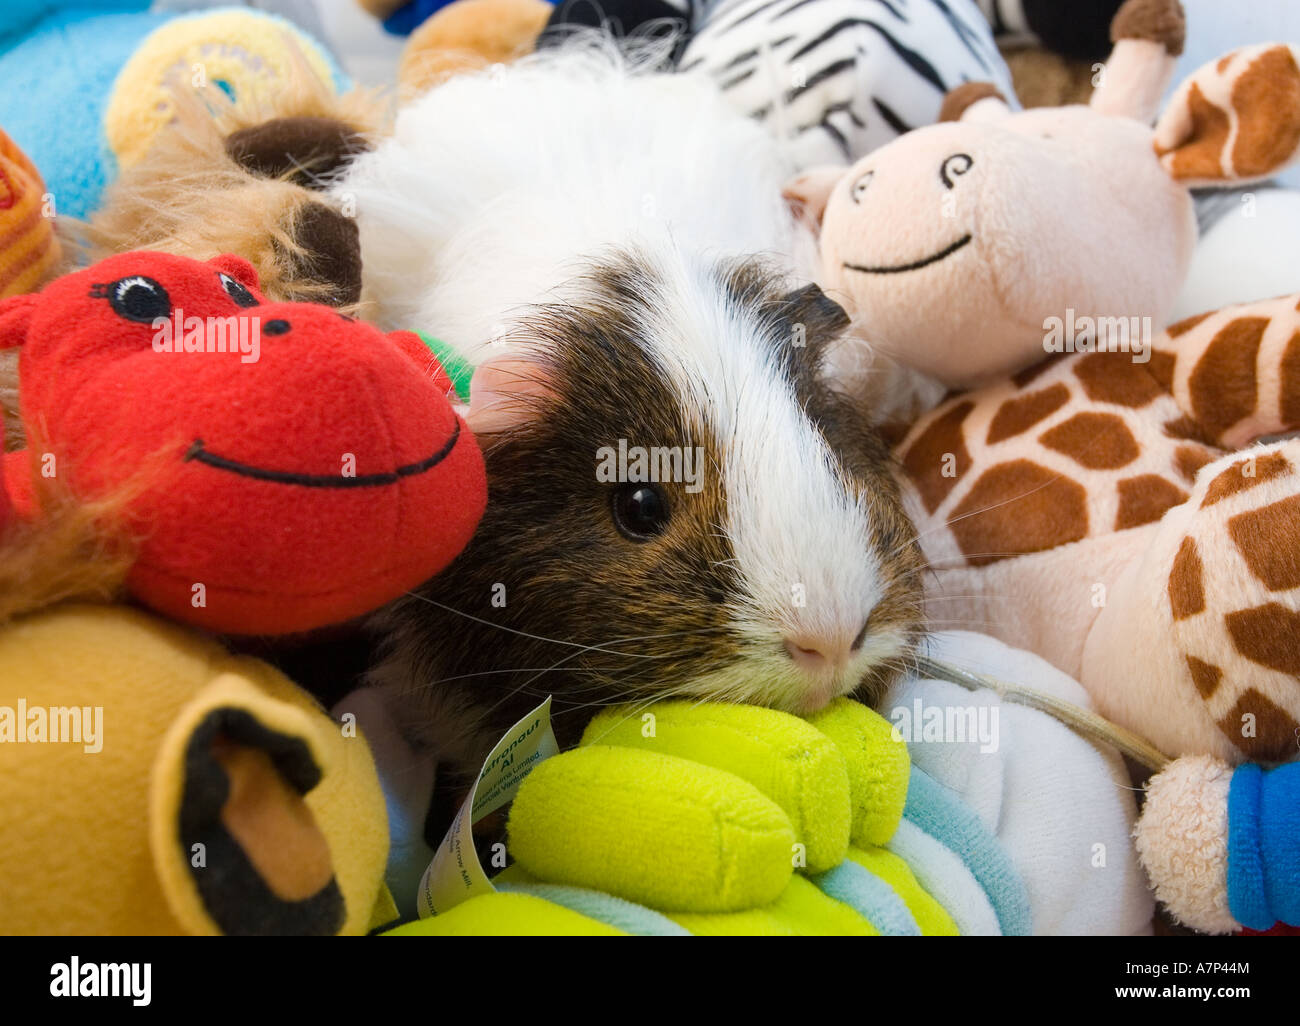 Guinea Pig Amongst children's toys funny Stock Photo